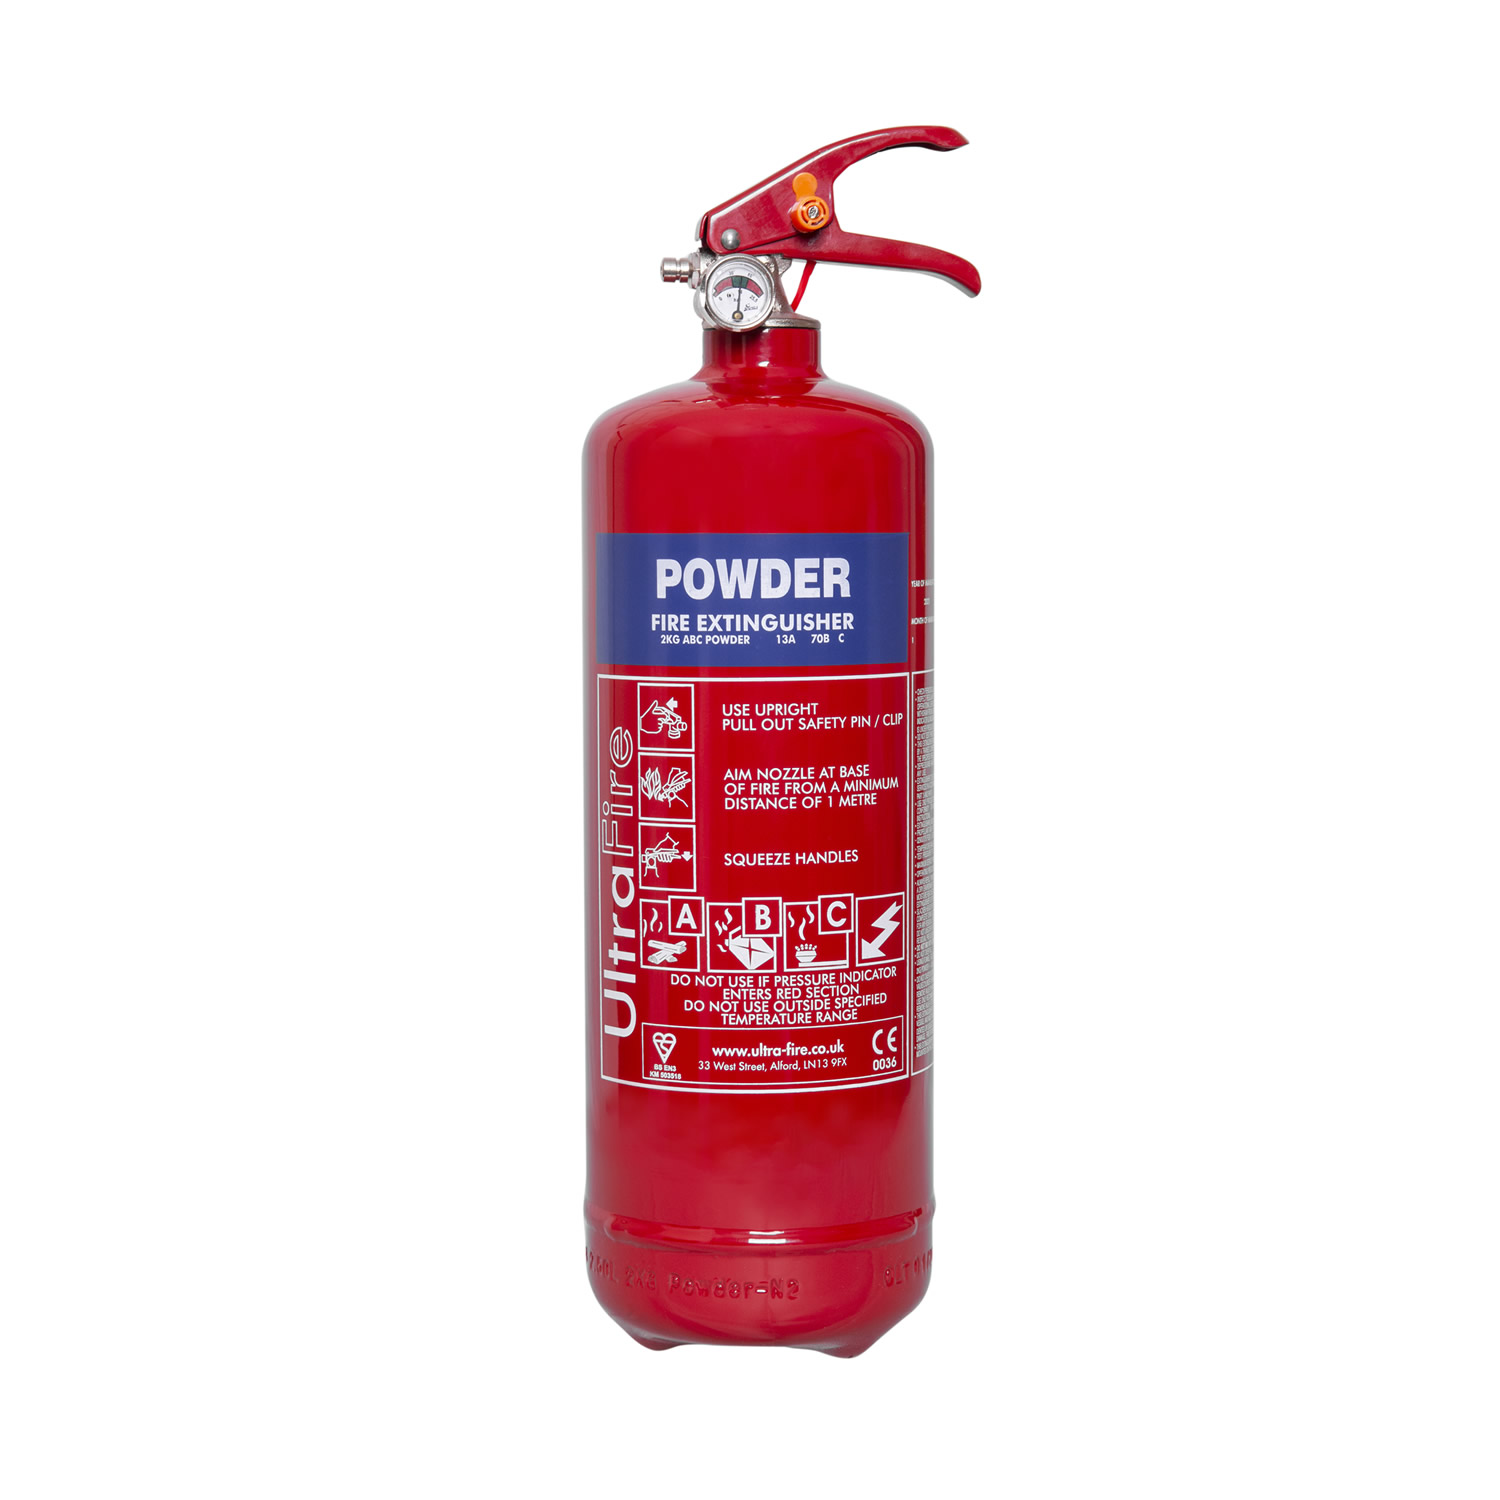 2kg fire extinguisher powder